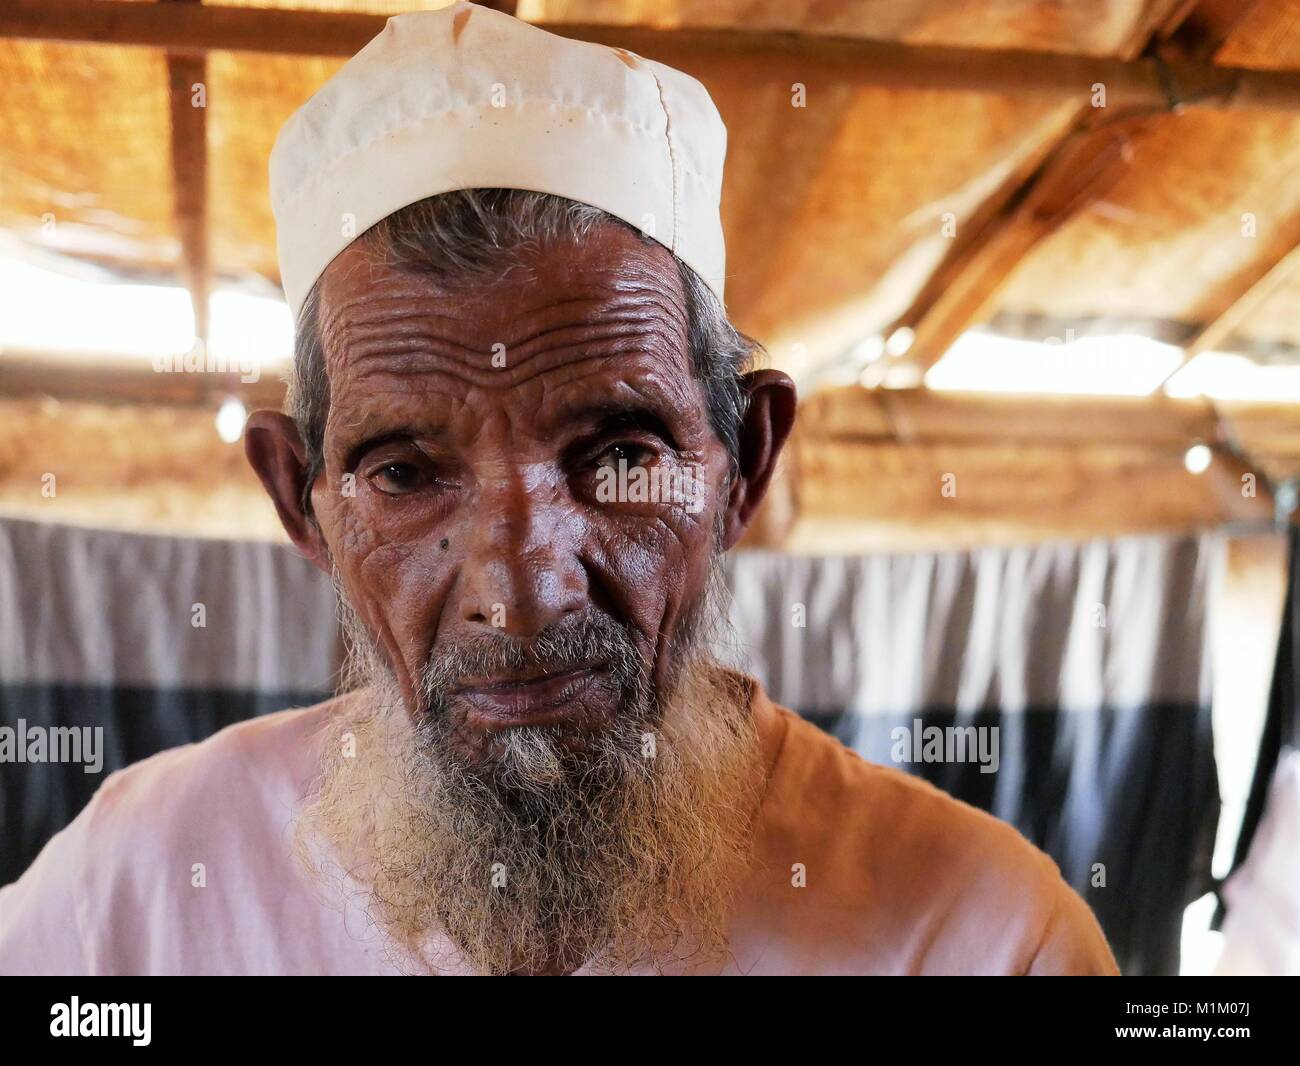 Januar 18, 2018 - Cox's Bazar, Bangladesch - Ein älterer Mann an der Rohingya Kutupalong Flüchtlingslager gesehen. Sogar Papst Franziskus war nicht erlaubt, ein Wort ''''Rohingya in Myanmar zu sagen. Mehr als eine Million Rohingya Flüchtlinge, die im August 2017 floh aus Rakhine State in Myanmar gezwungen waren, ihr Leben zu retten von ethnischen Säuberungen leben in sehr einfachen Bedingungen in den Flüchtlingslagern in Bangladesch und ihre Zukunft ist sehr unsicher. Sie haben Angst, nach Hause zurückzukehren - aber Rückführung Vertrag wurde bereits unterzeichnet, sie zur Rückkehr in ihre Heimat, wo sie nicht erwünscht sind. (Bild: © Jana Cav Stockfoto